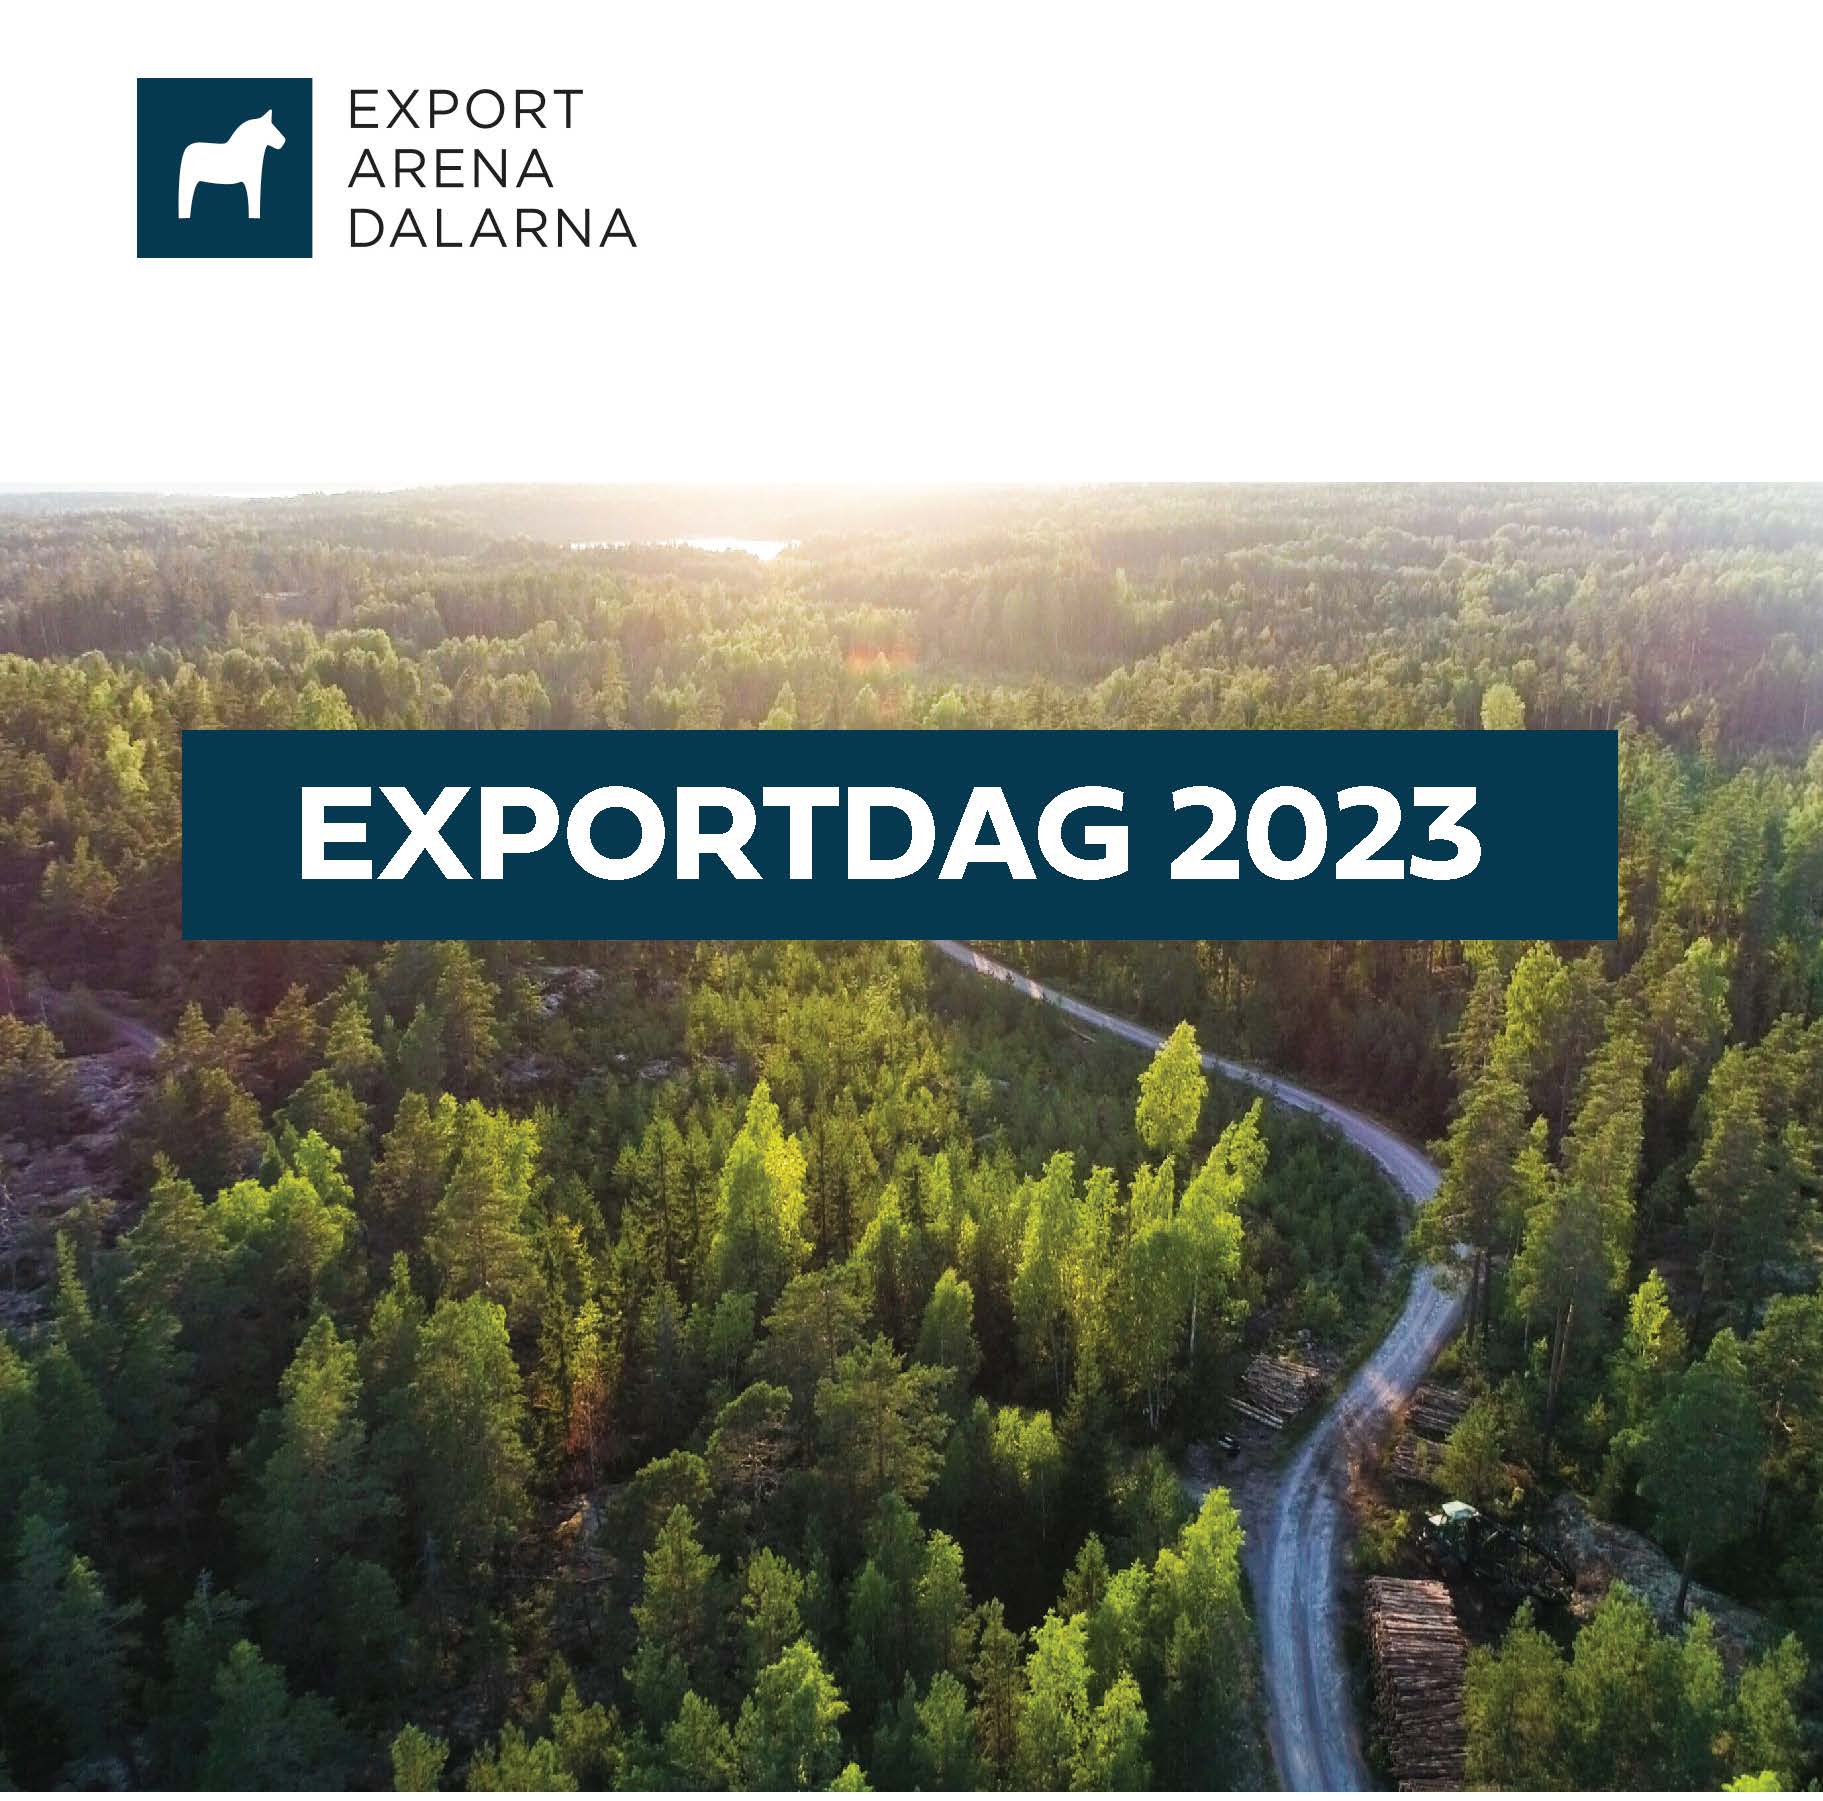 Dalarnas Exportdag 2023